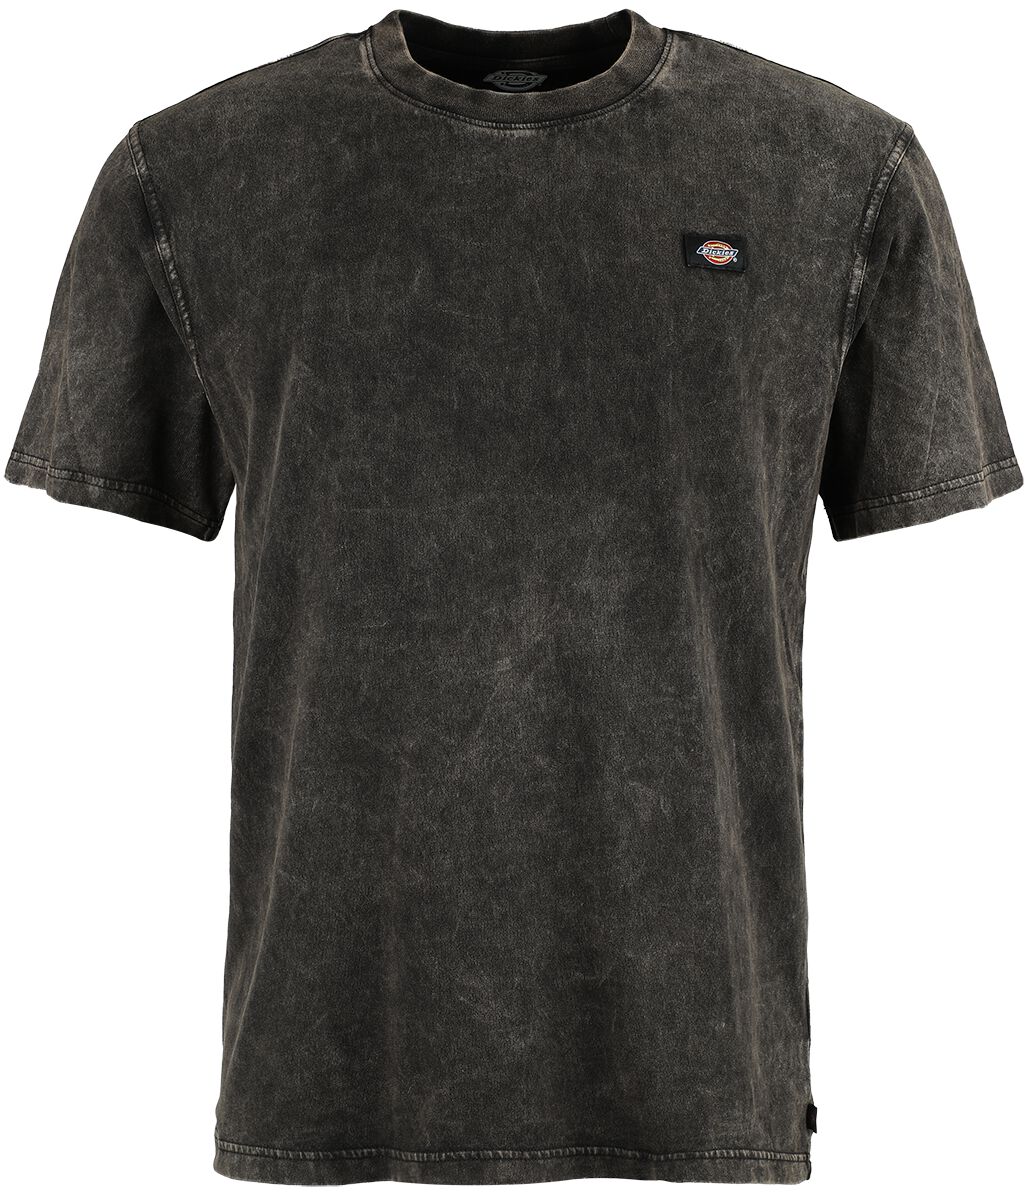 Dickies T-Shirt - Newington Tee - M - für Männer - Größe M - schwarz